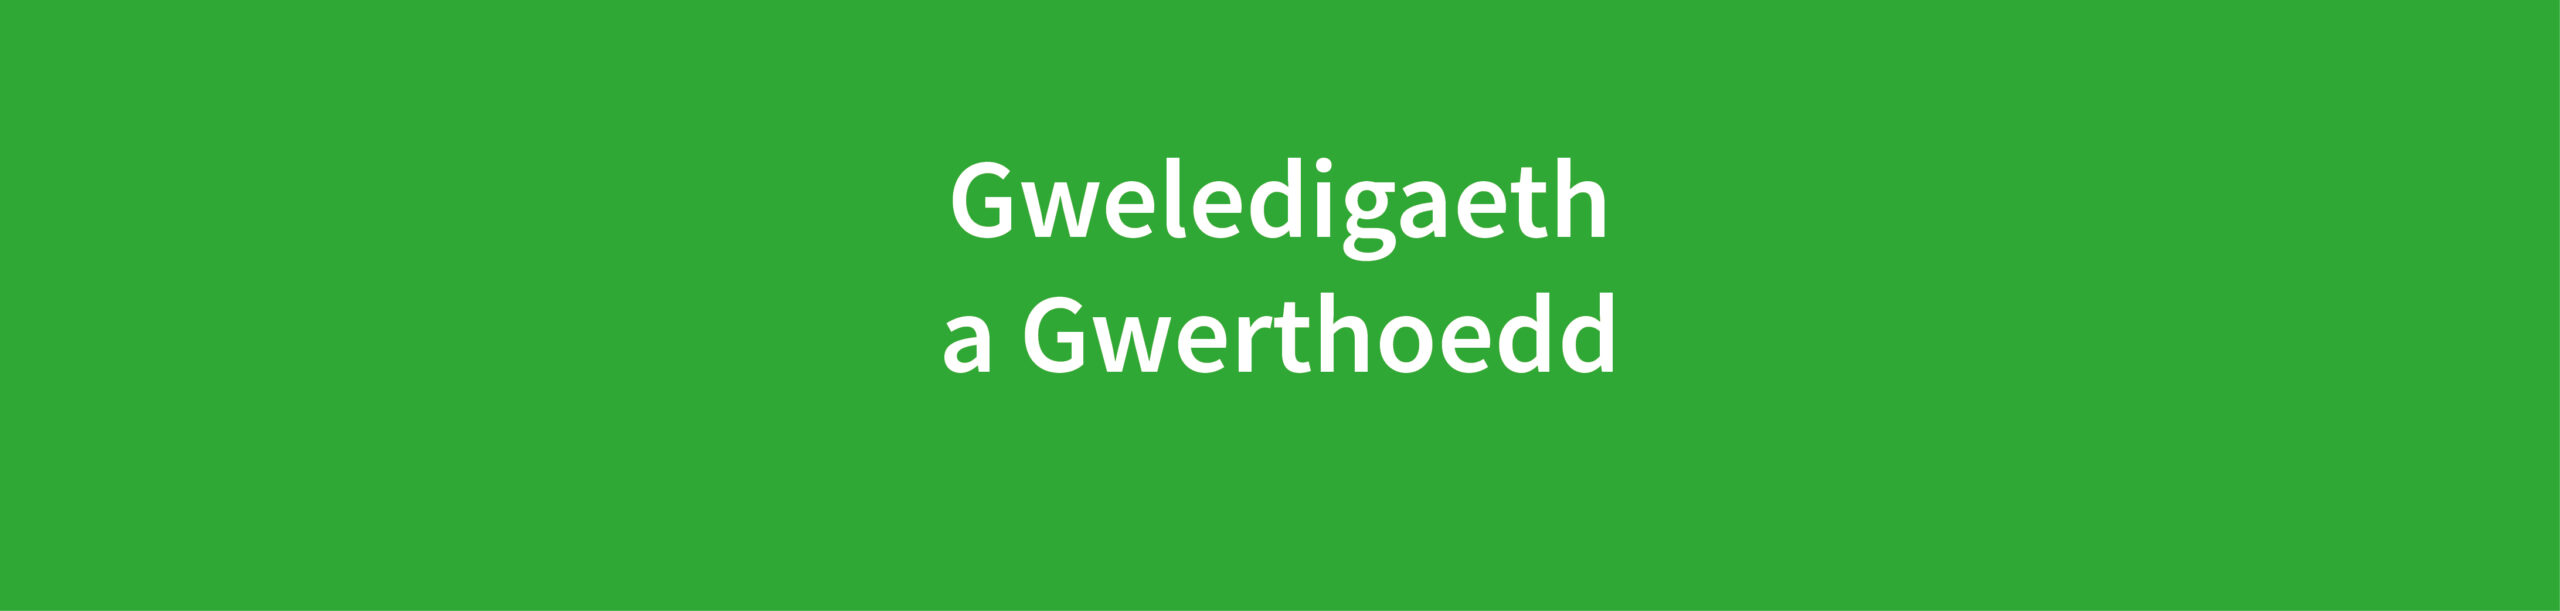 Gweledigaeth a Gwerthoedd text in white on green background